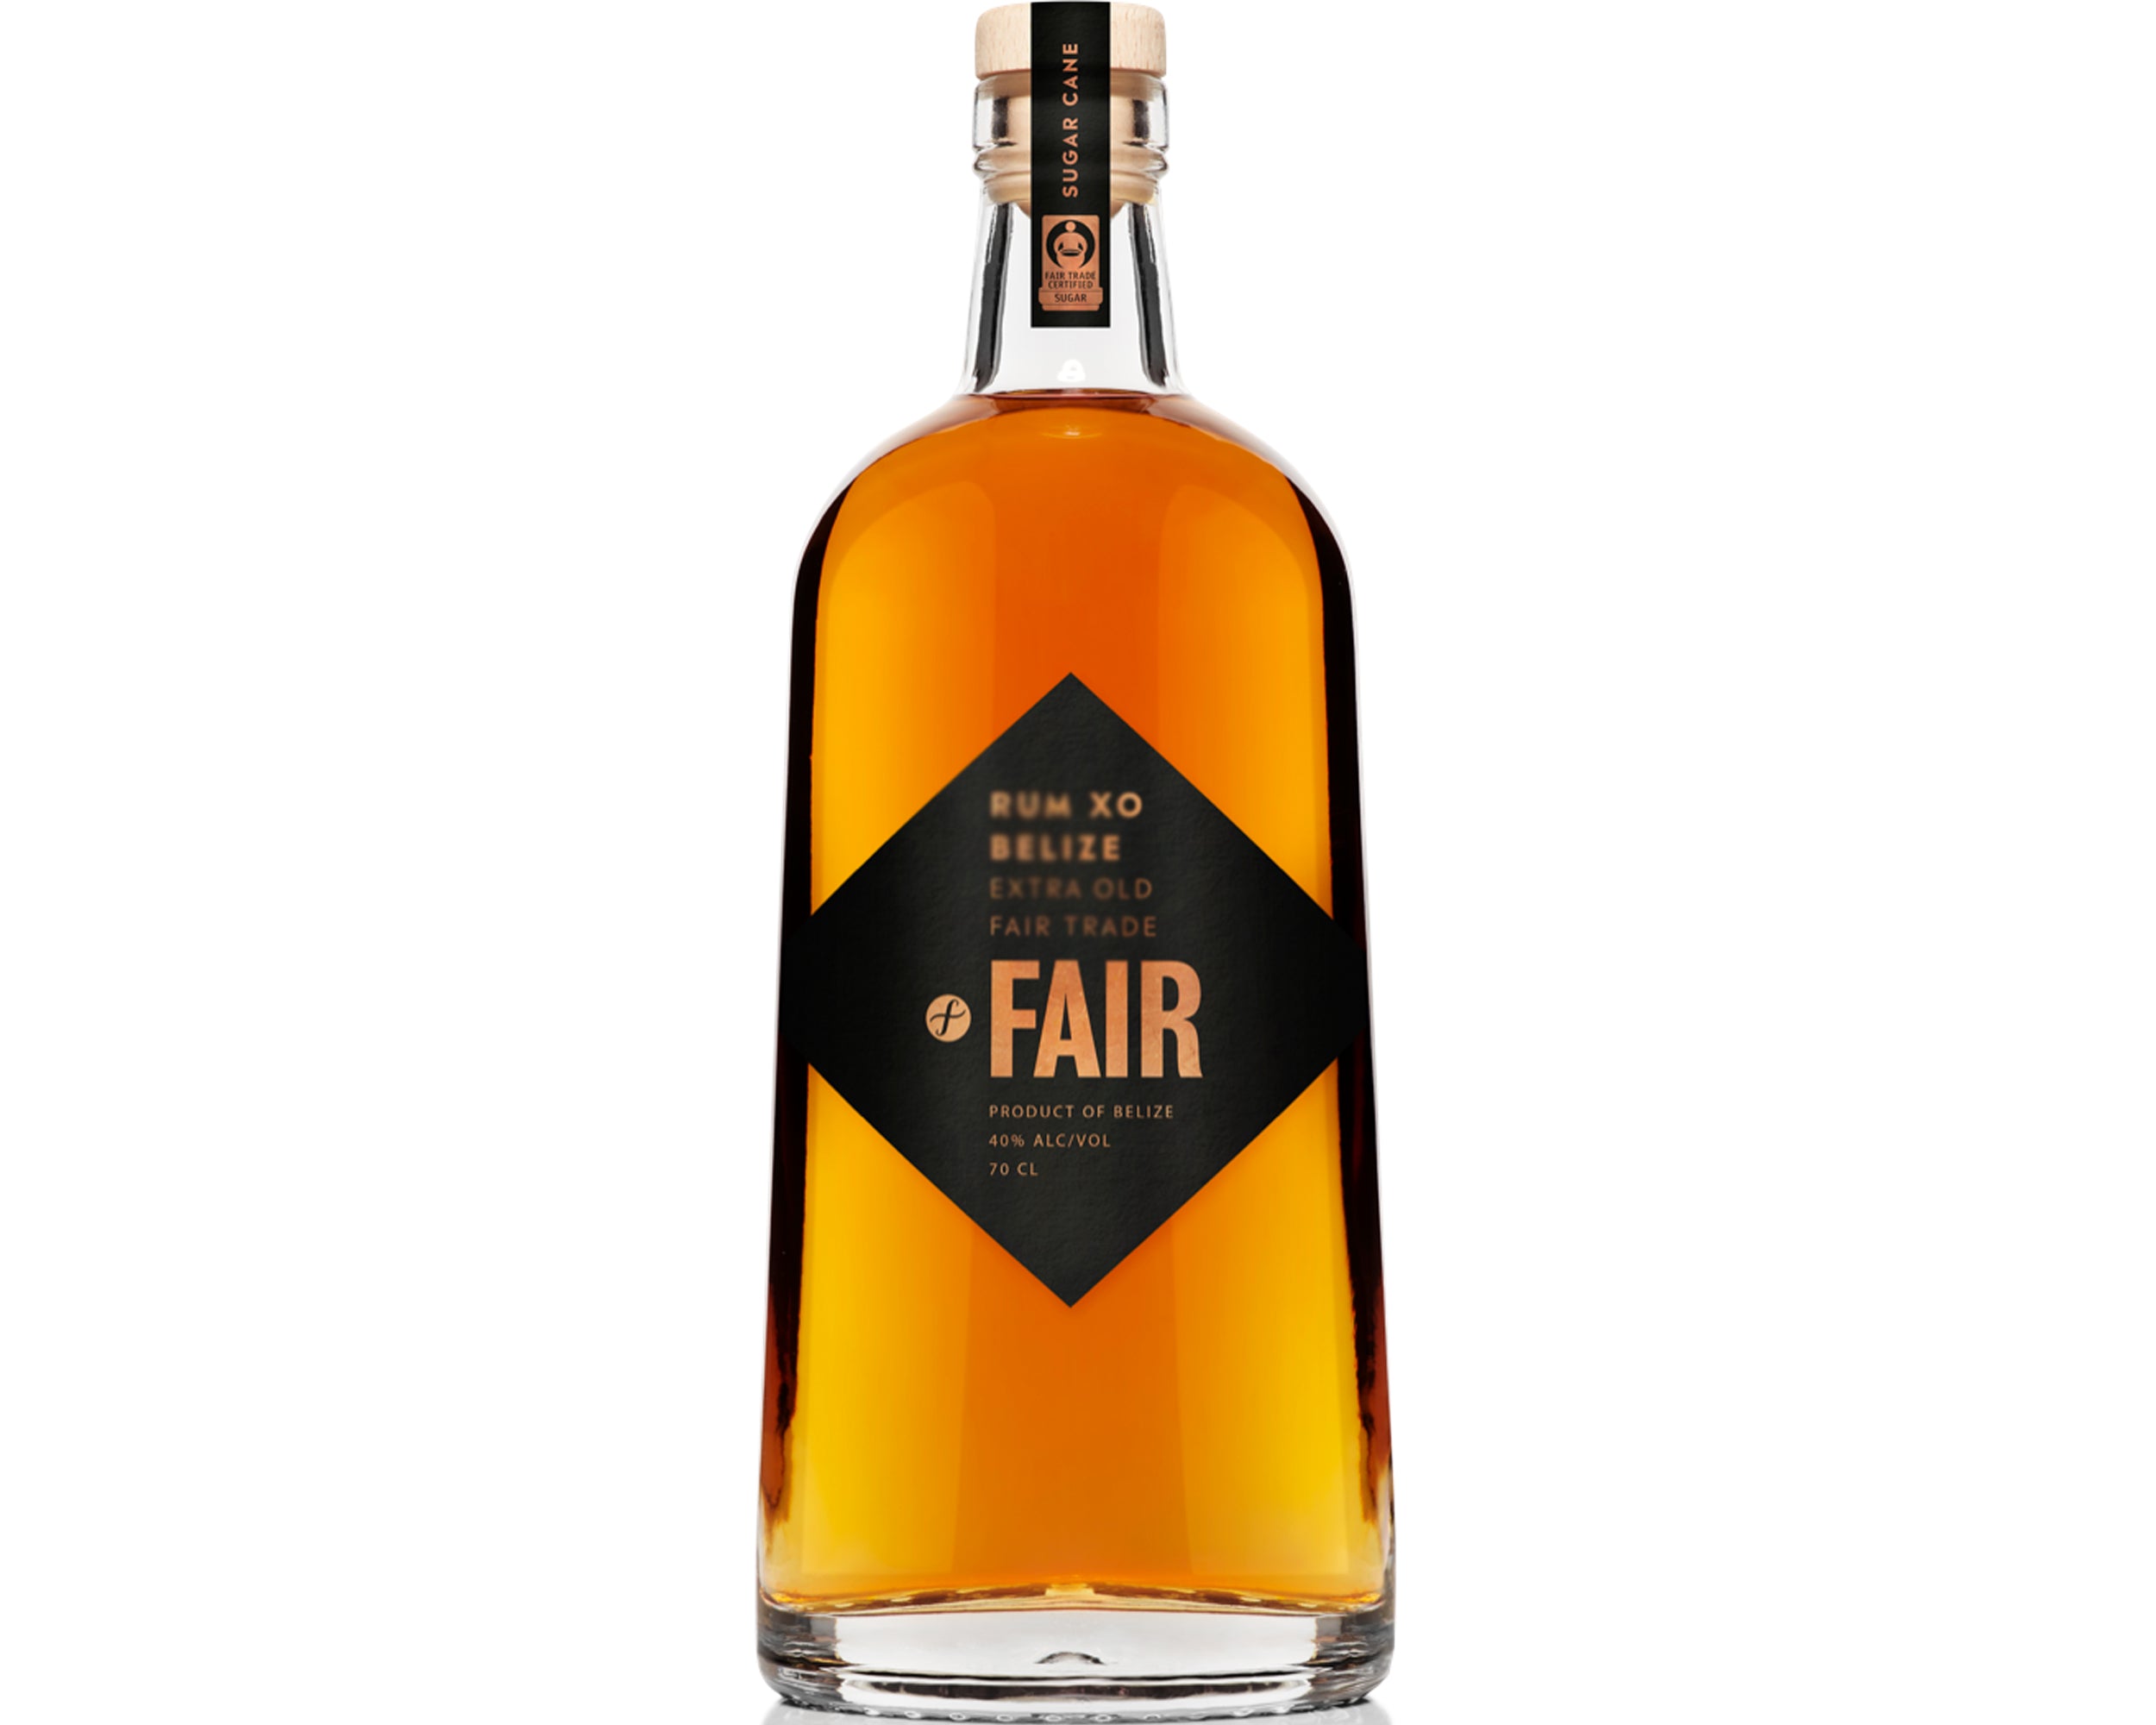 Fair Rum 5yr